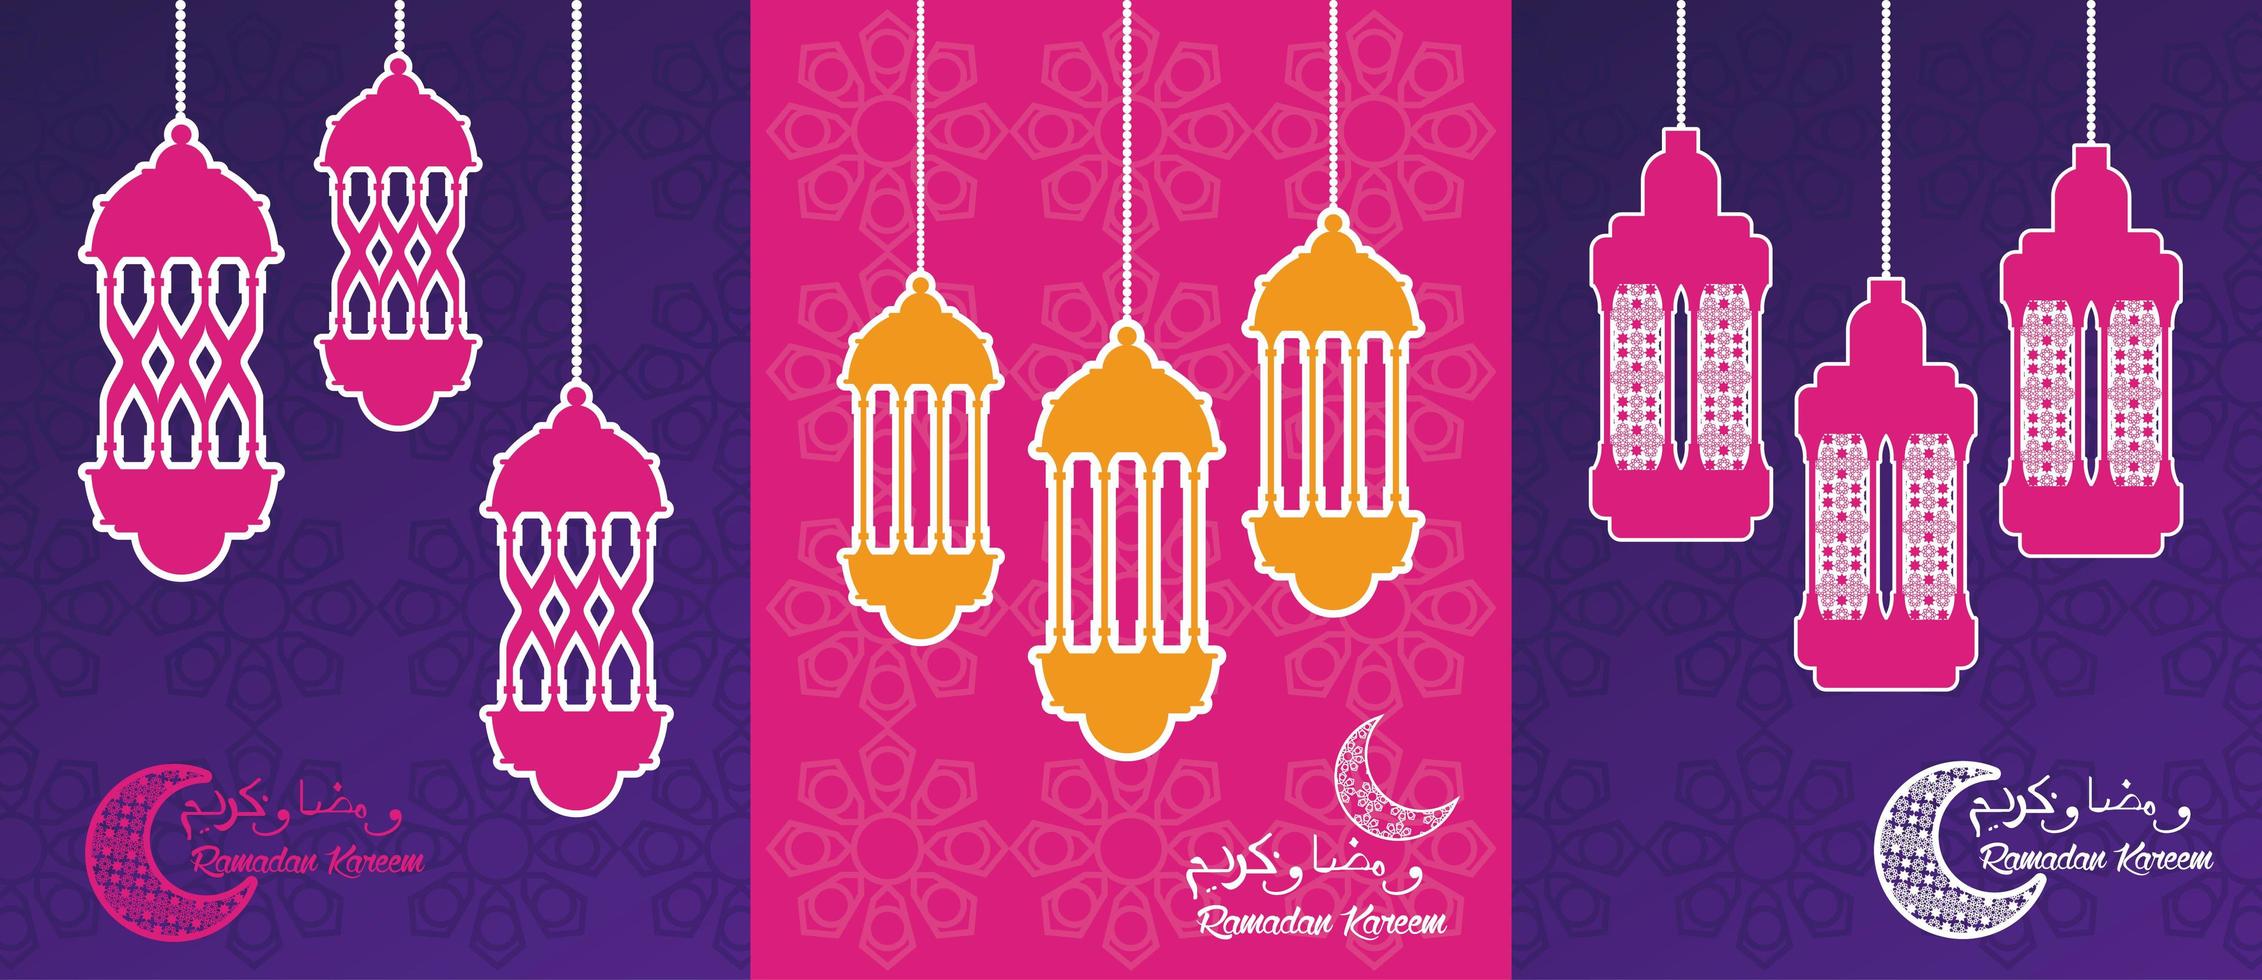 tarjeta de celebración de ramadan kareem con linternas colgando vector